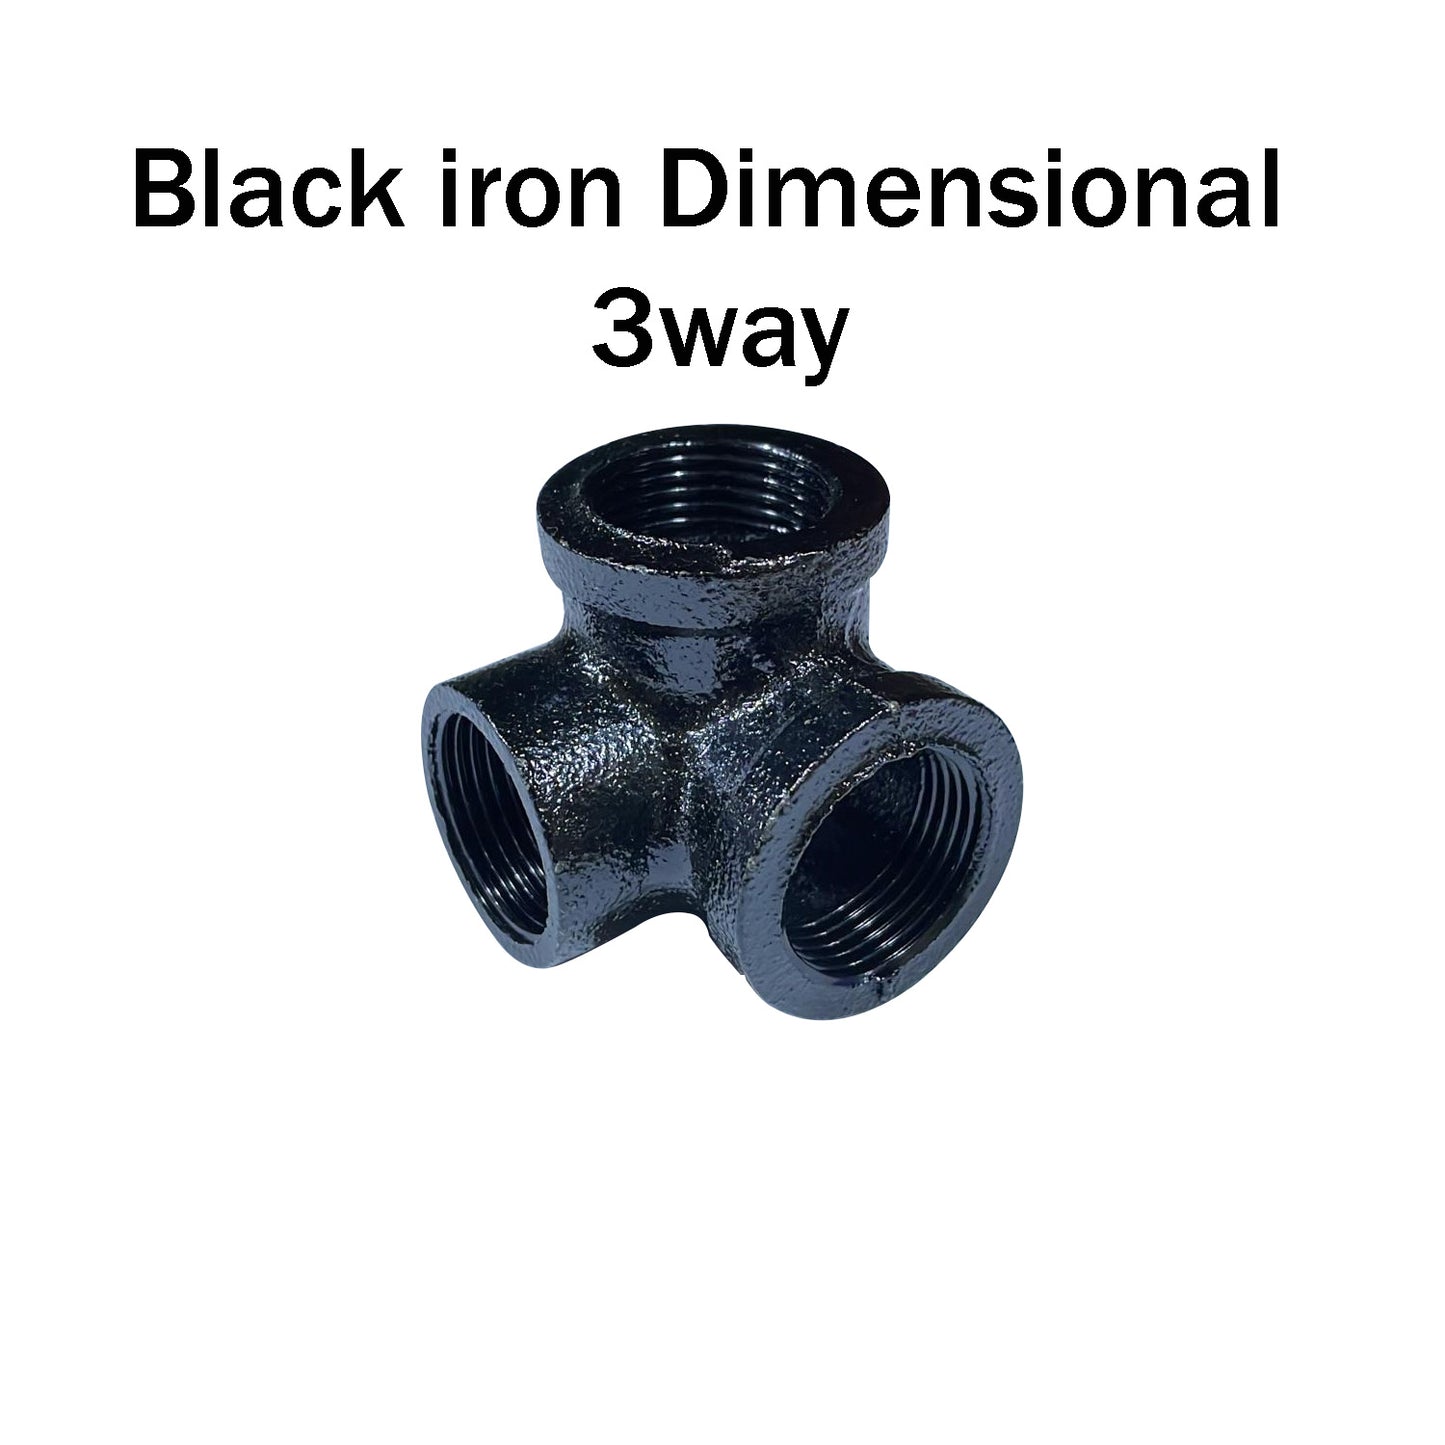 Schwarzes Eisen 3-dimensionales 3-Wege-Rohrbeleuchtungszubehör